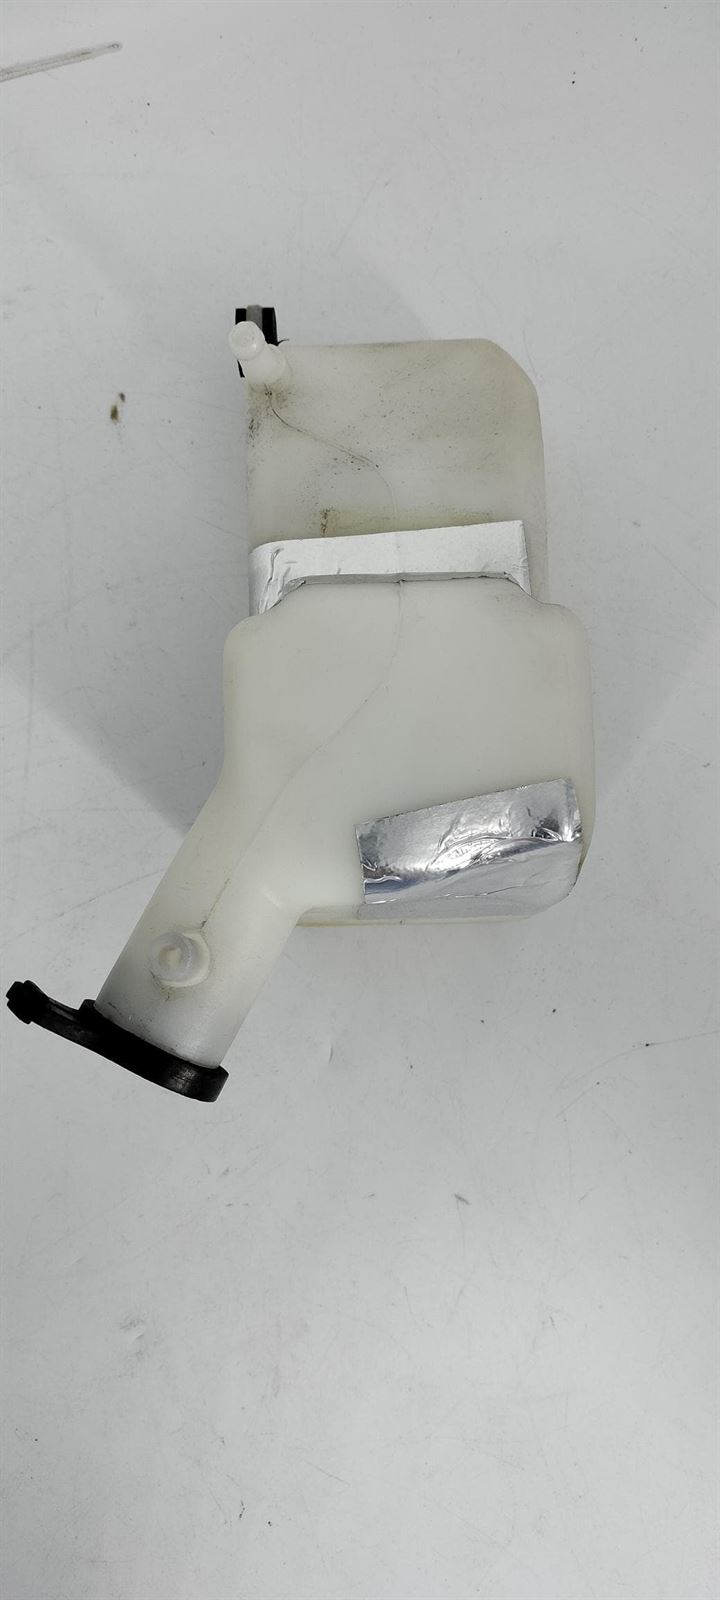 Depósito líquido refrigerante Hyosung GV 650 - Imagen 3